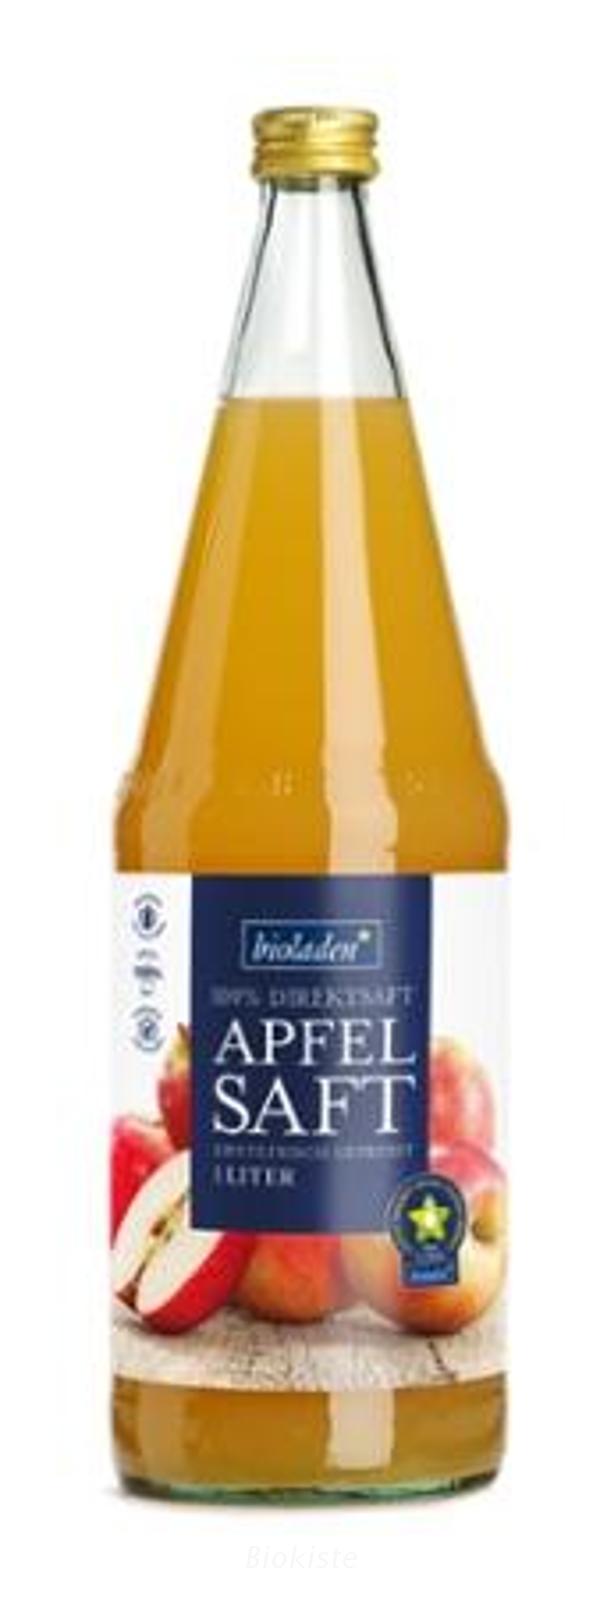 Produktfoto zu Apfelsaft Bioladen 1 Liter